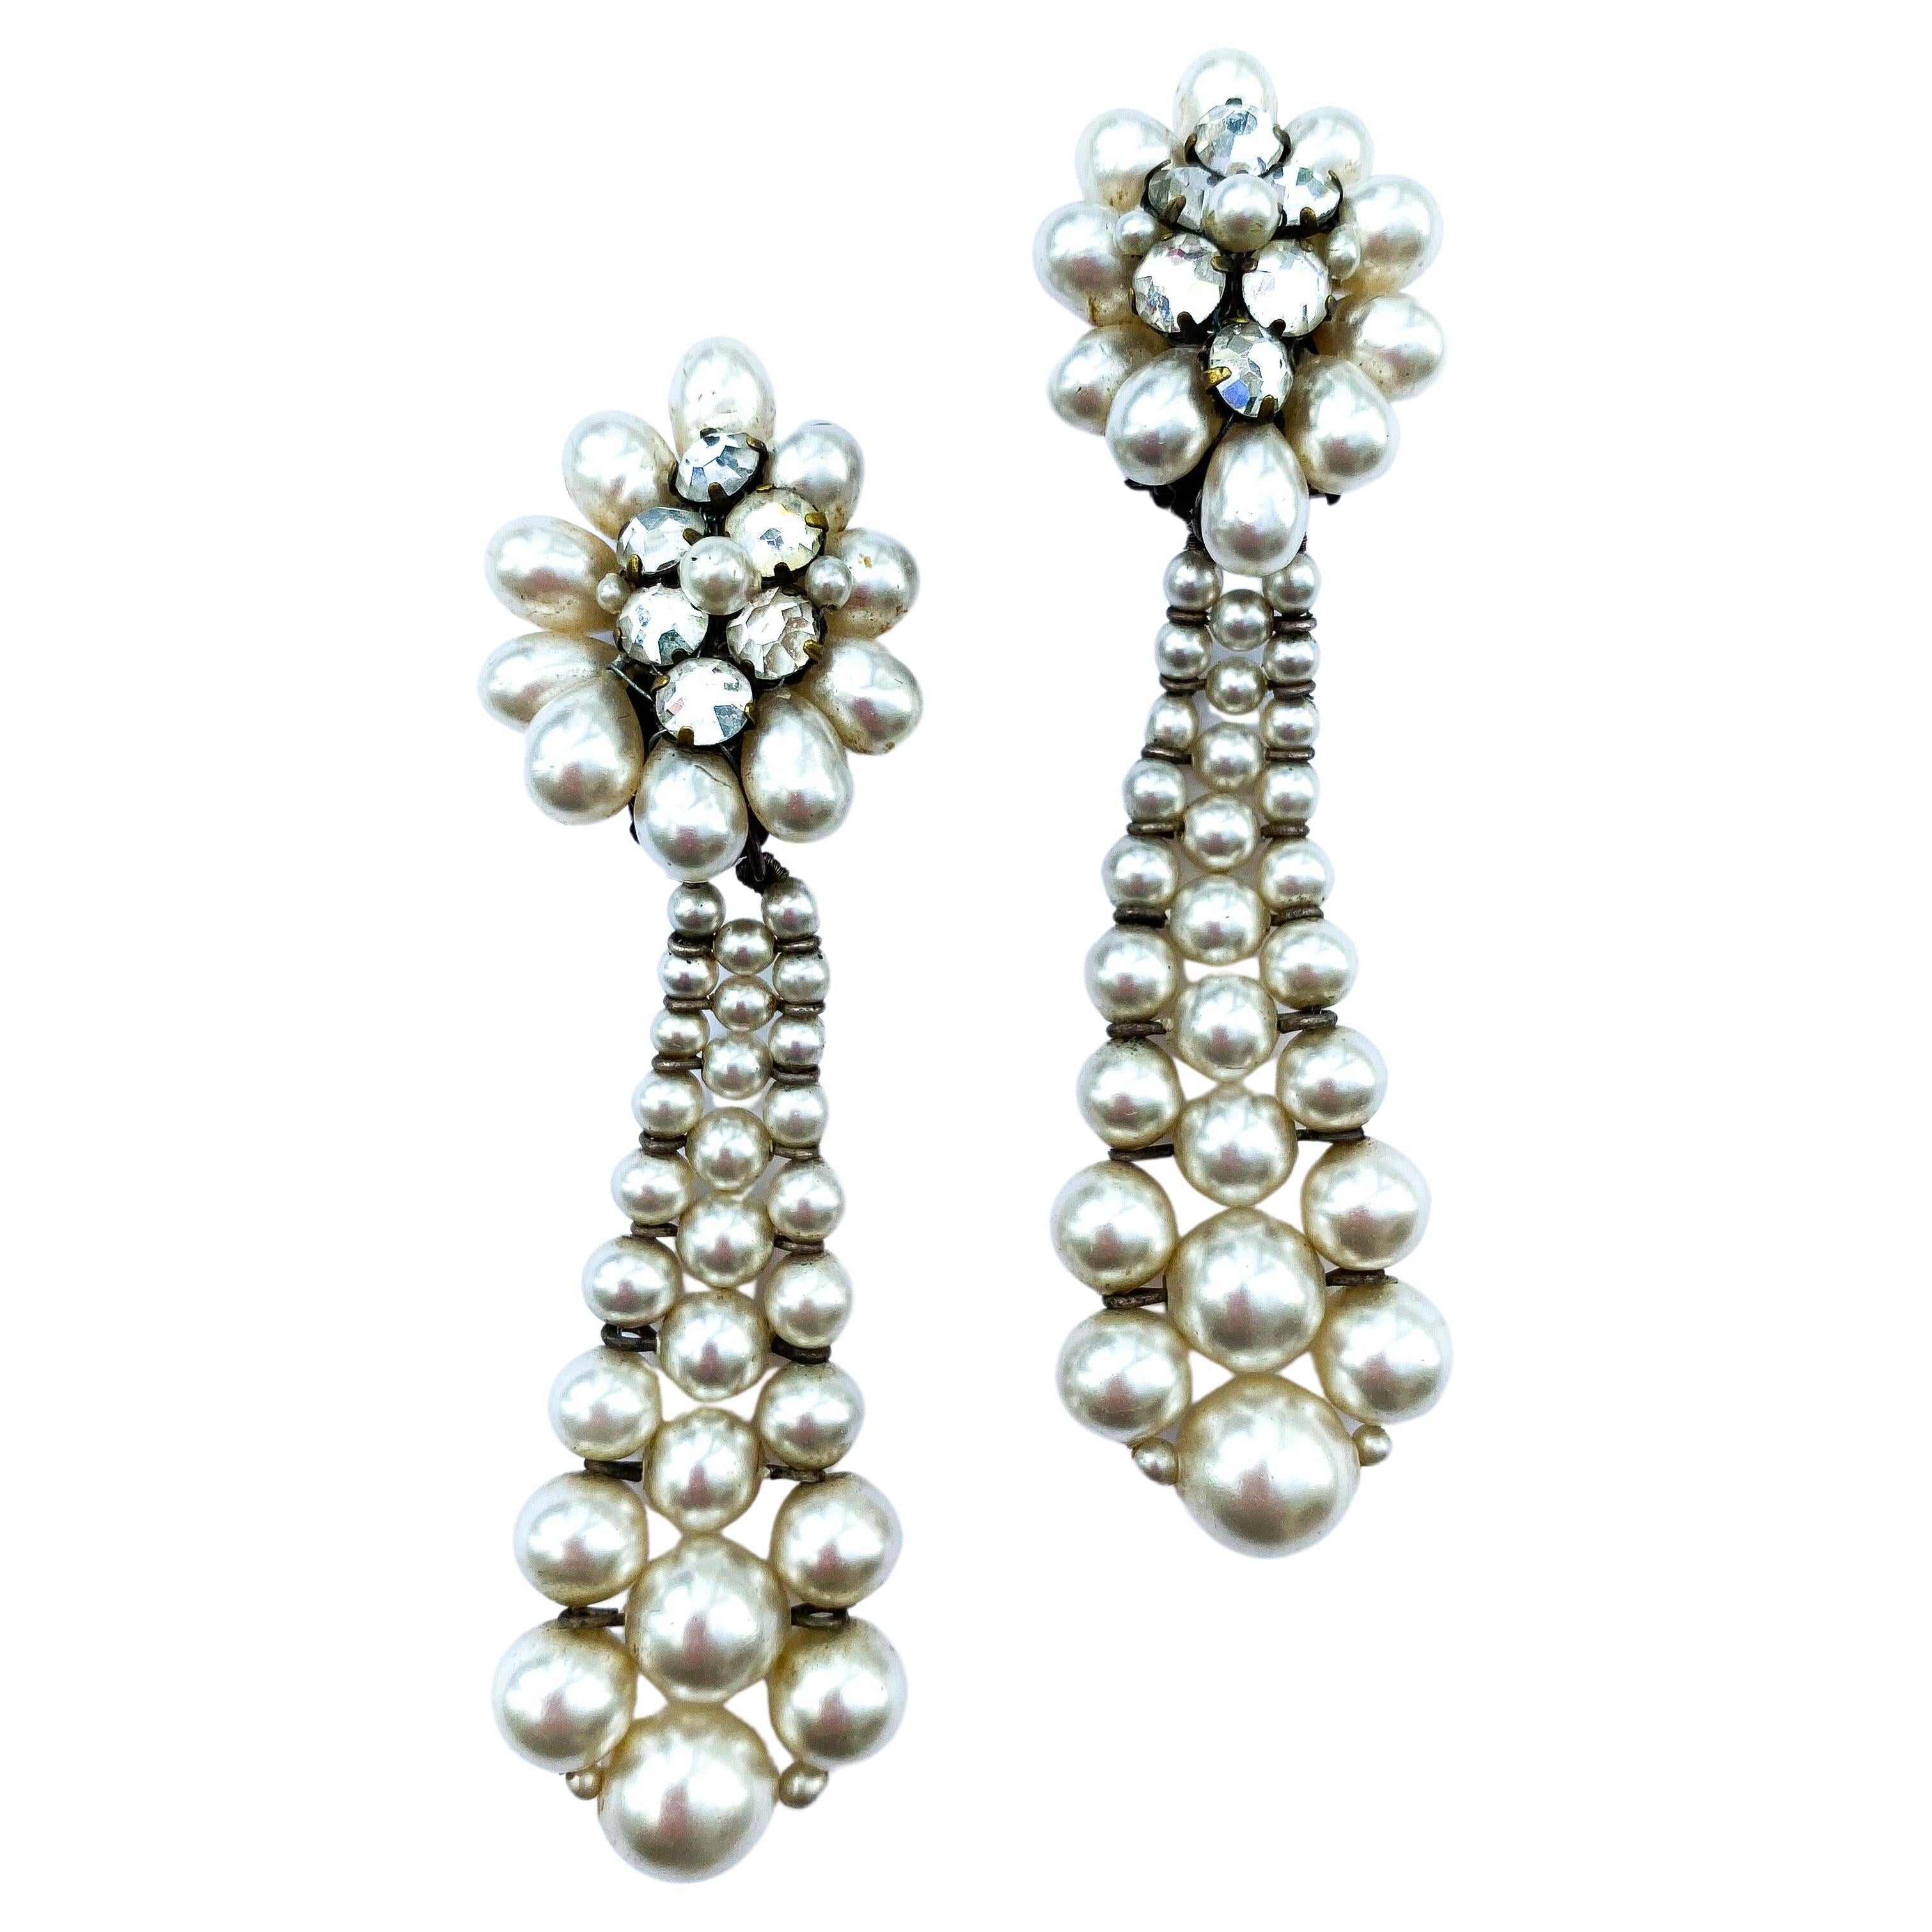 Elegant very long paste and paste pearl drop earrings, Louis Rousselet, 1950s.